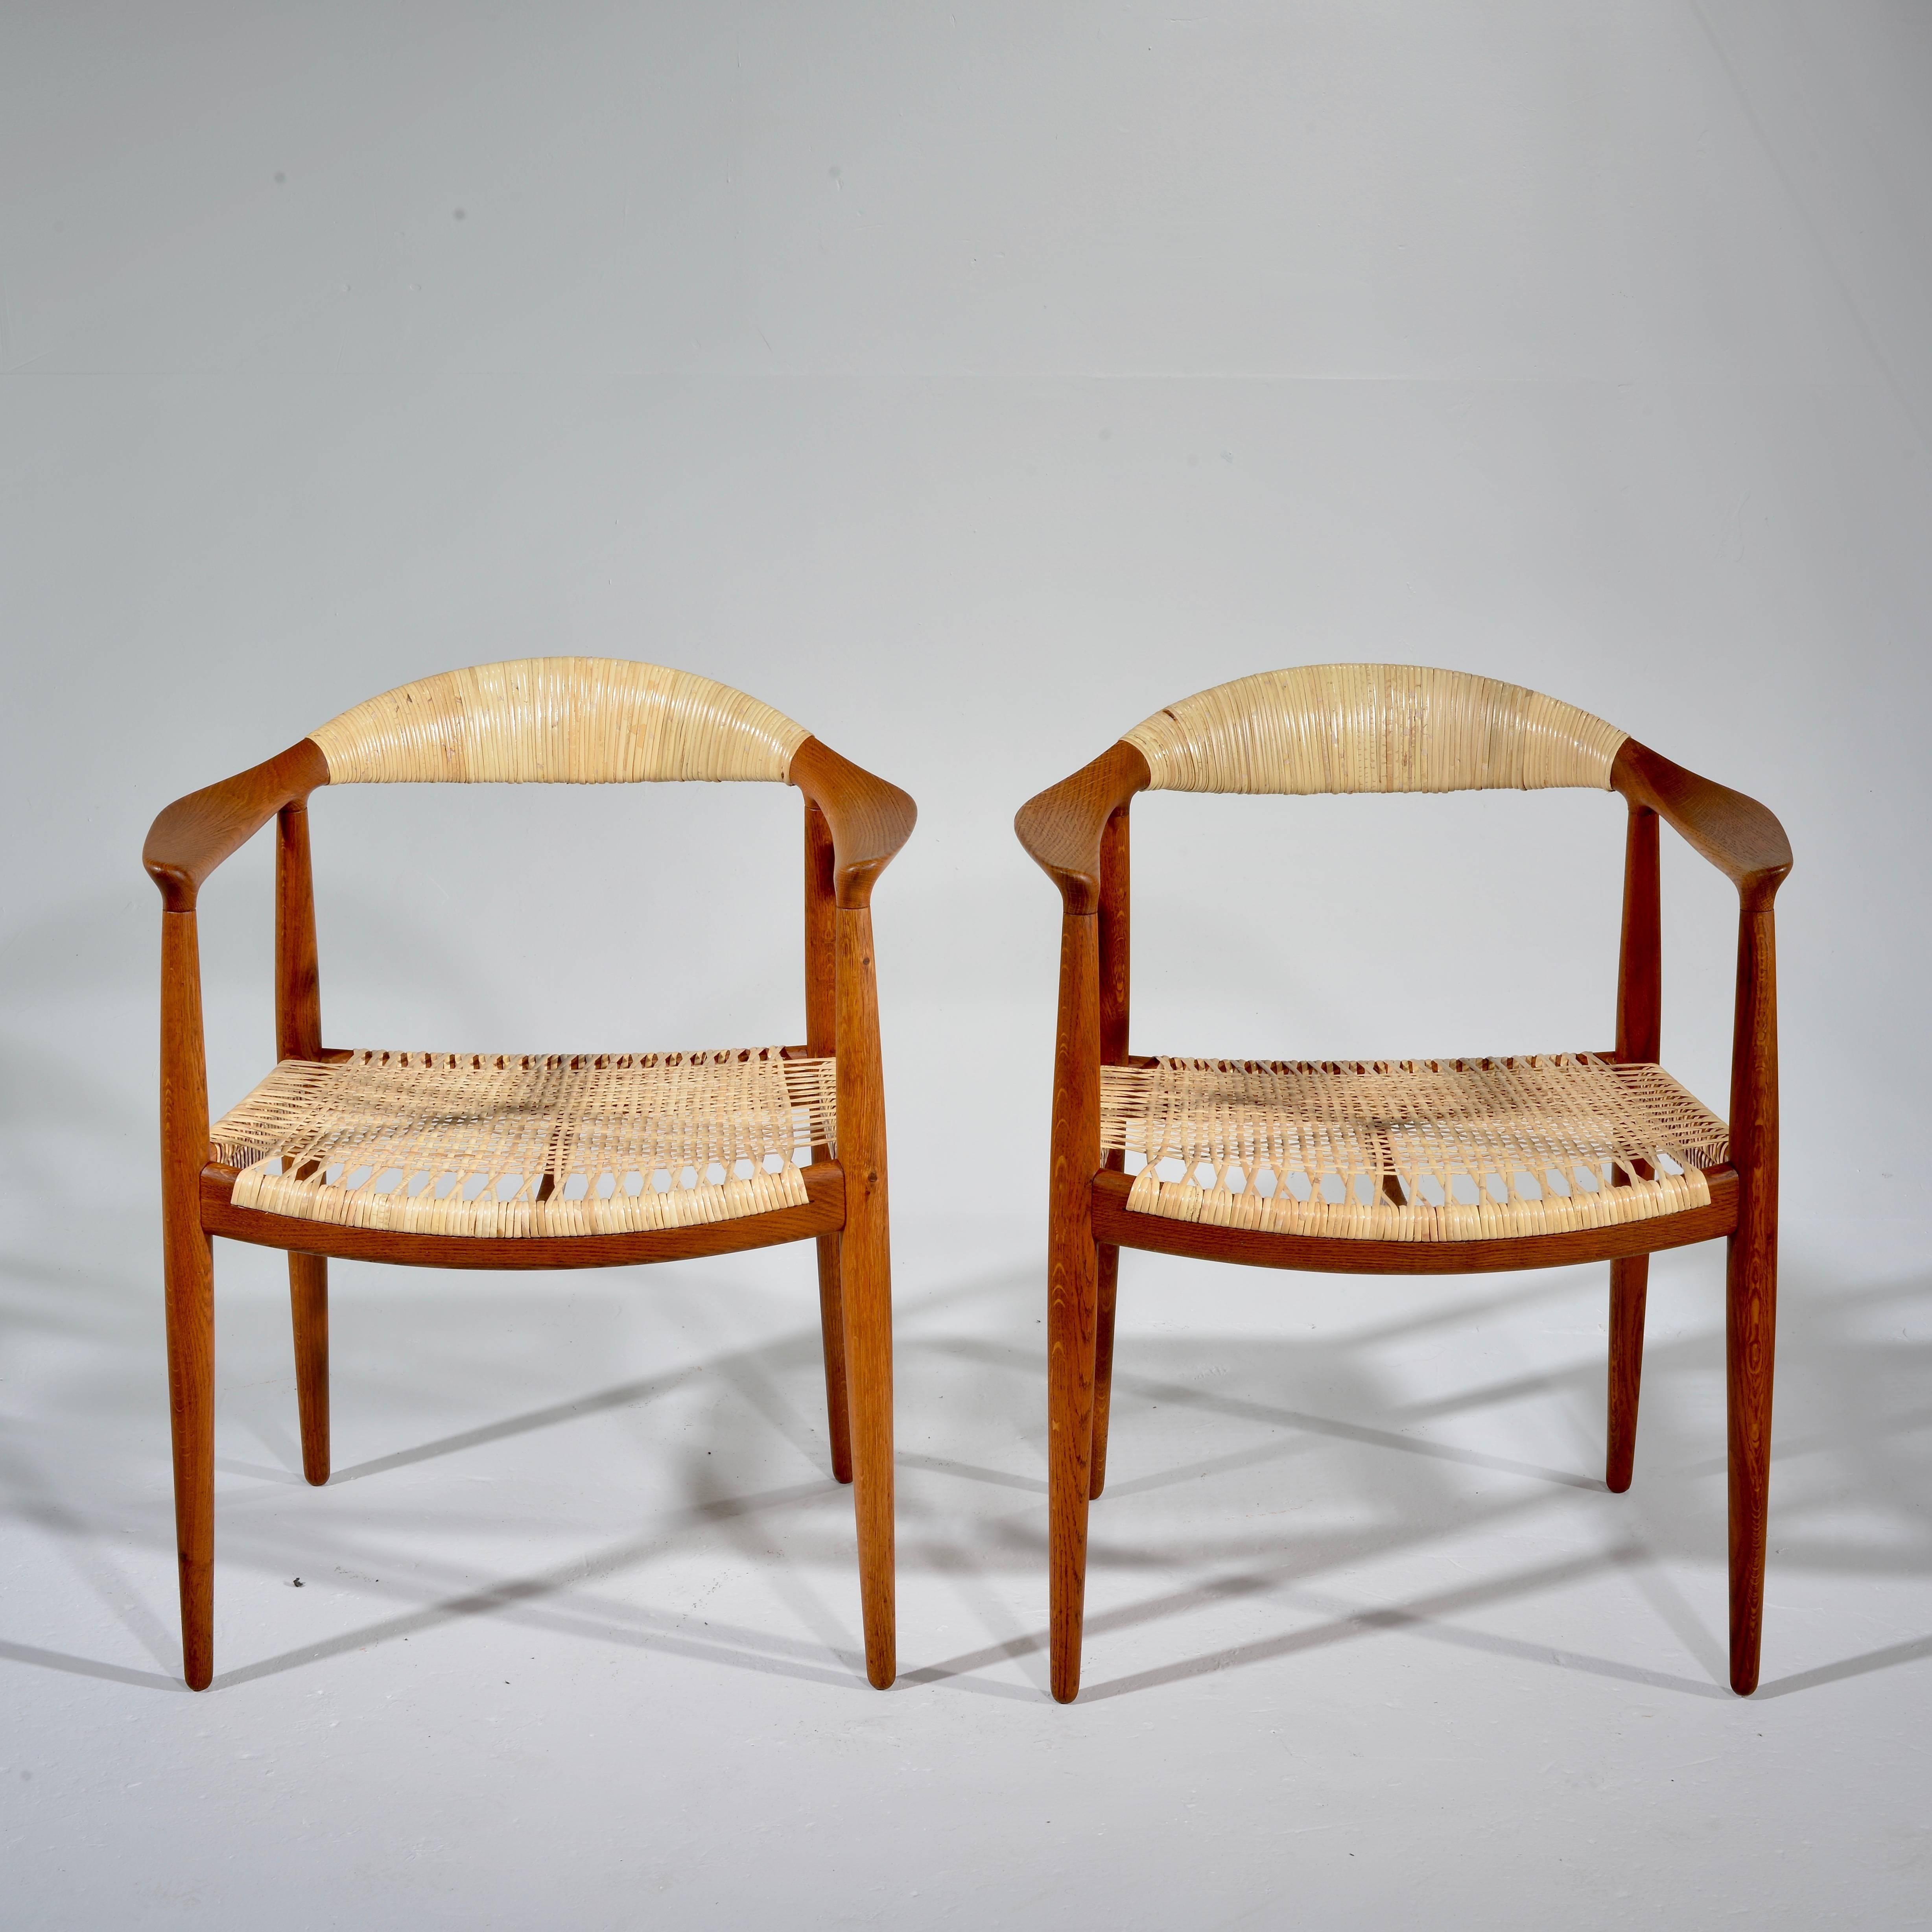 Il s'agit d'une paire de fauteuils anciens en chêne et cannés de Hans Wegner pour Johannes Hansen, Danemark. Excellent état, y compris les nouveaux sièges et dossiers en canne fabriqués par des professionnels.